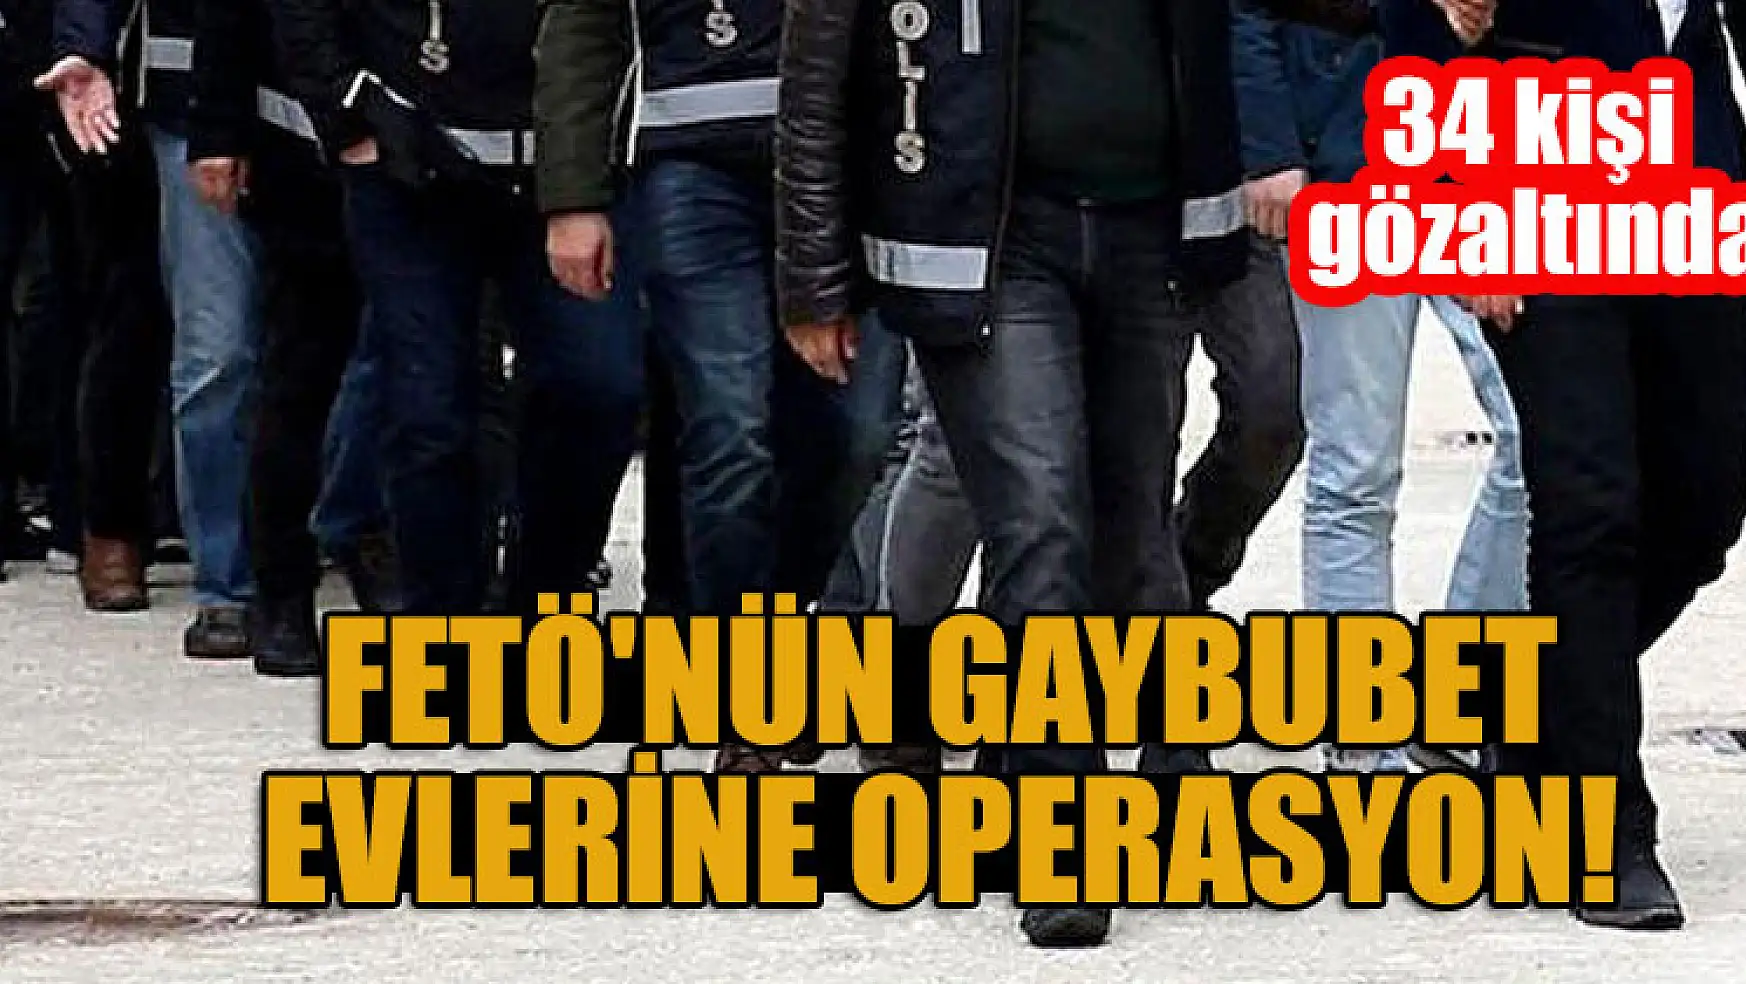 FETÖ'nün gaybubet evlerine operasyon: 34 kişi gözaltında